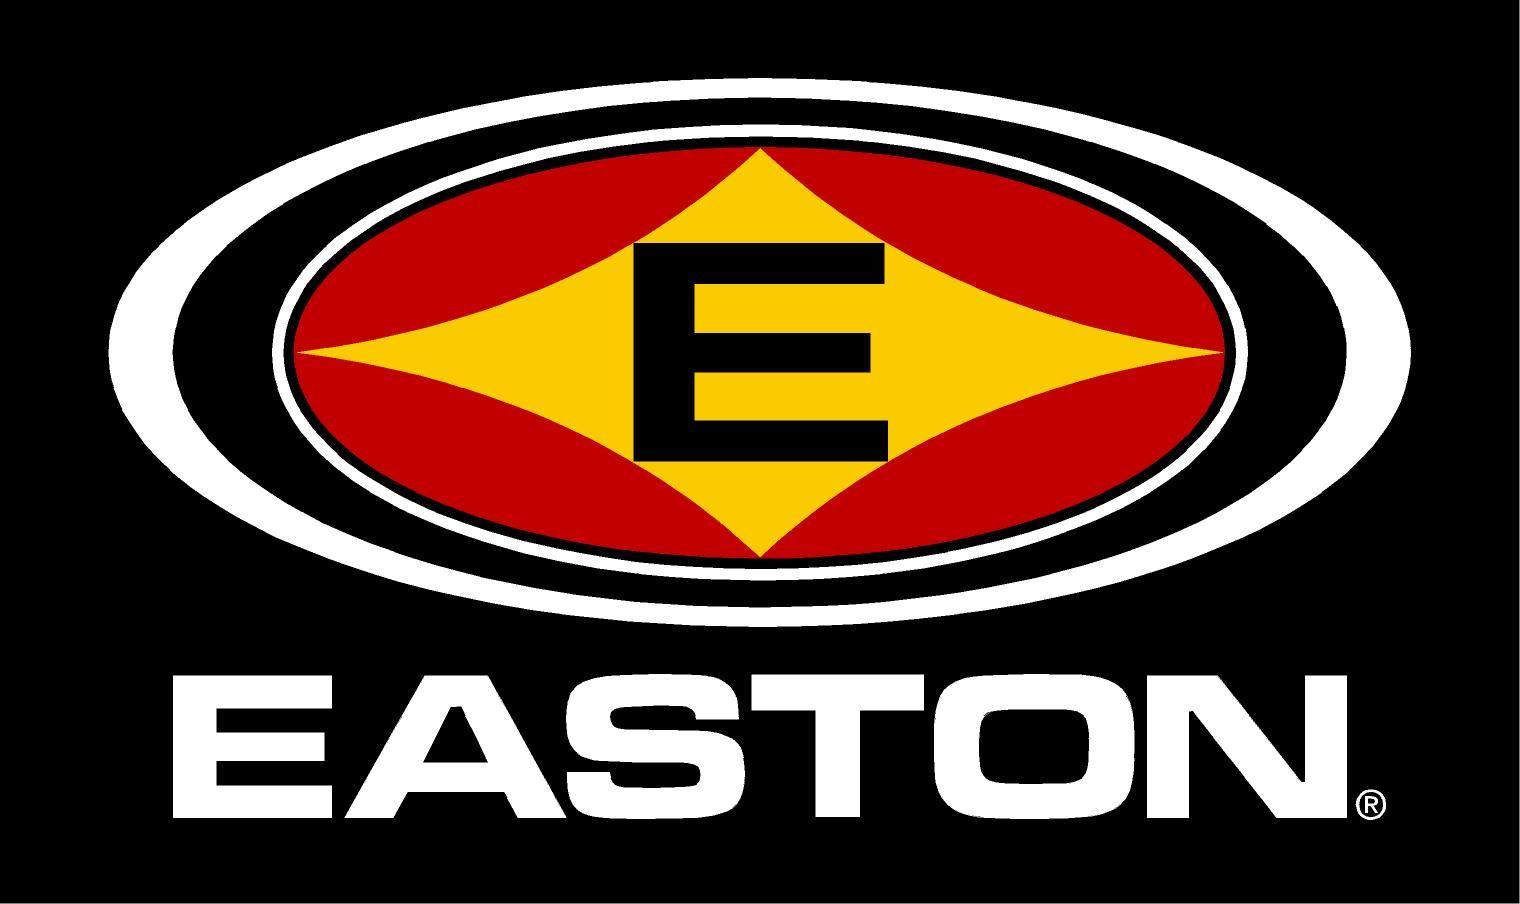 Easton Bat Logo - Easton Baseball Bats – Details, Pictures, Prices & Online Shop ...